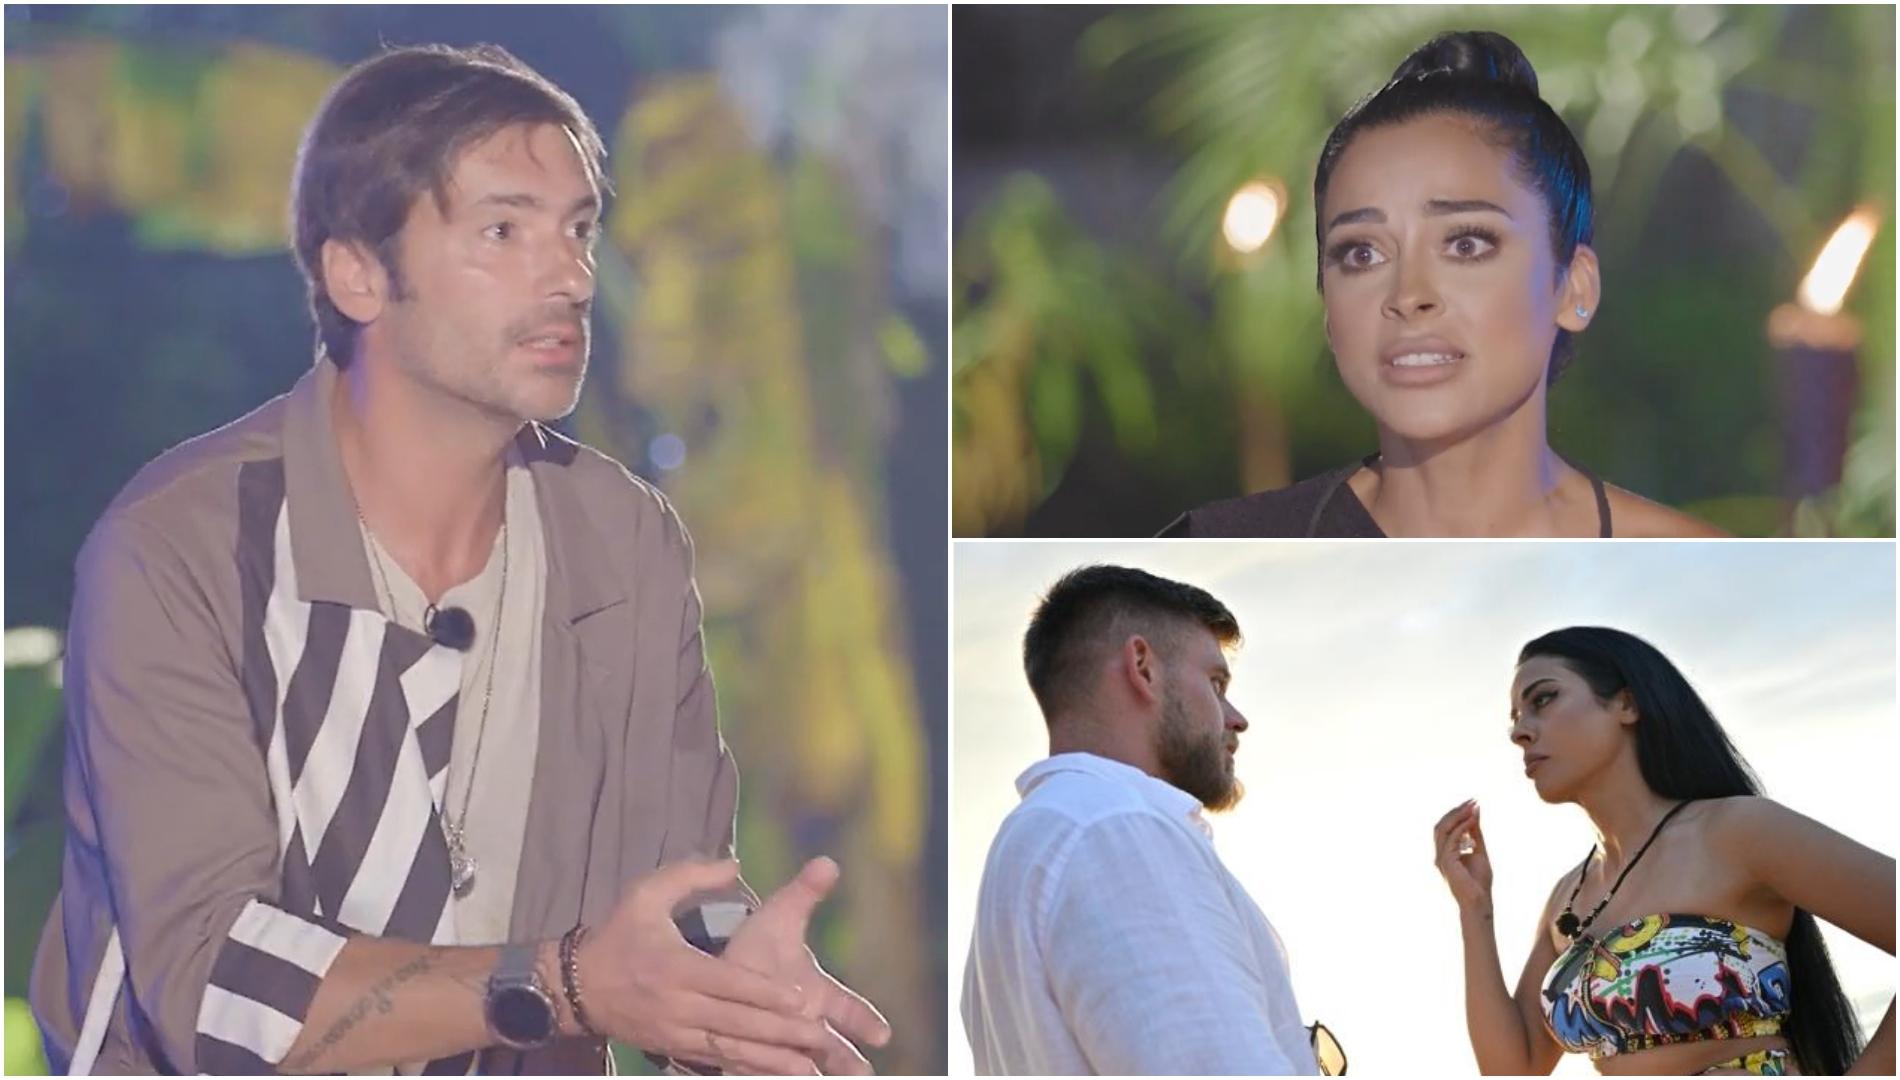 Au venit despărțiți Ema Oprișan și Răzvan Kovacs la Insula Iubrii sezonul 7? Detaliile nedifuzate la TV care au ieșit la iveală